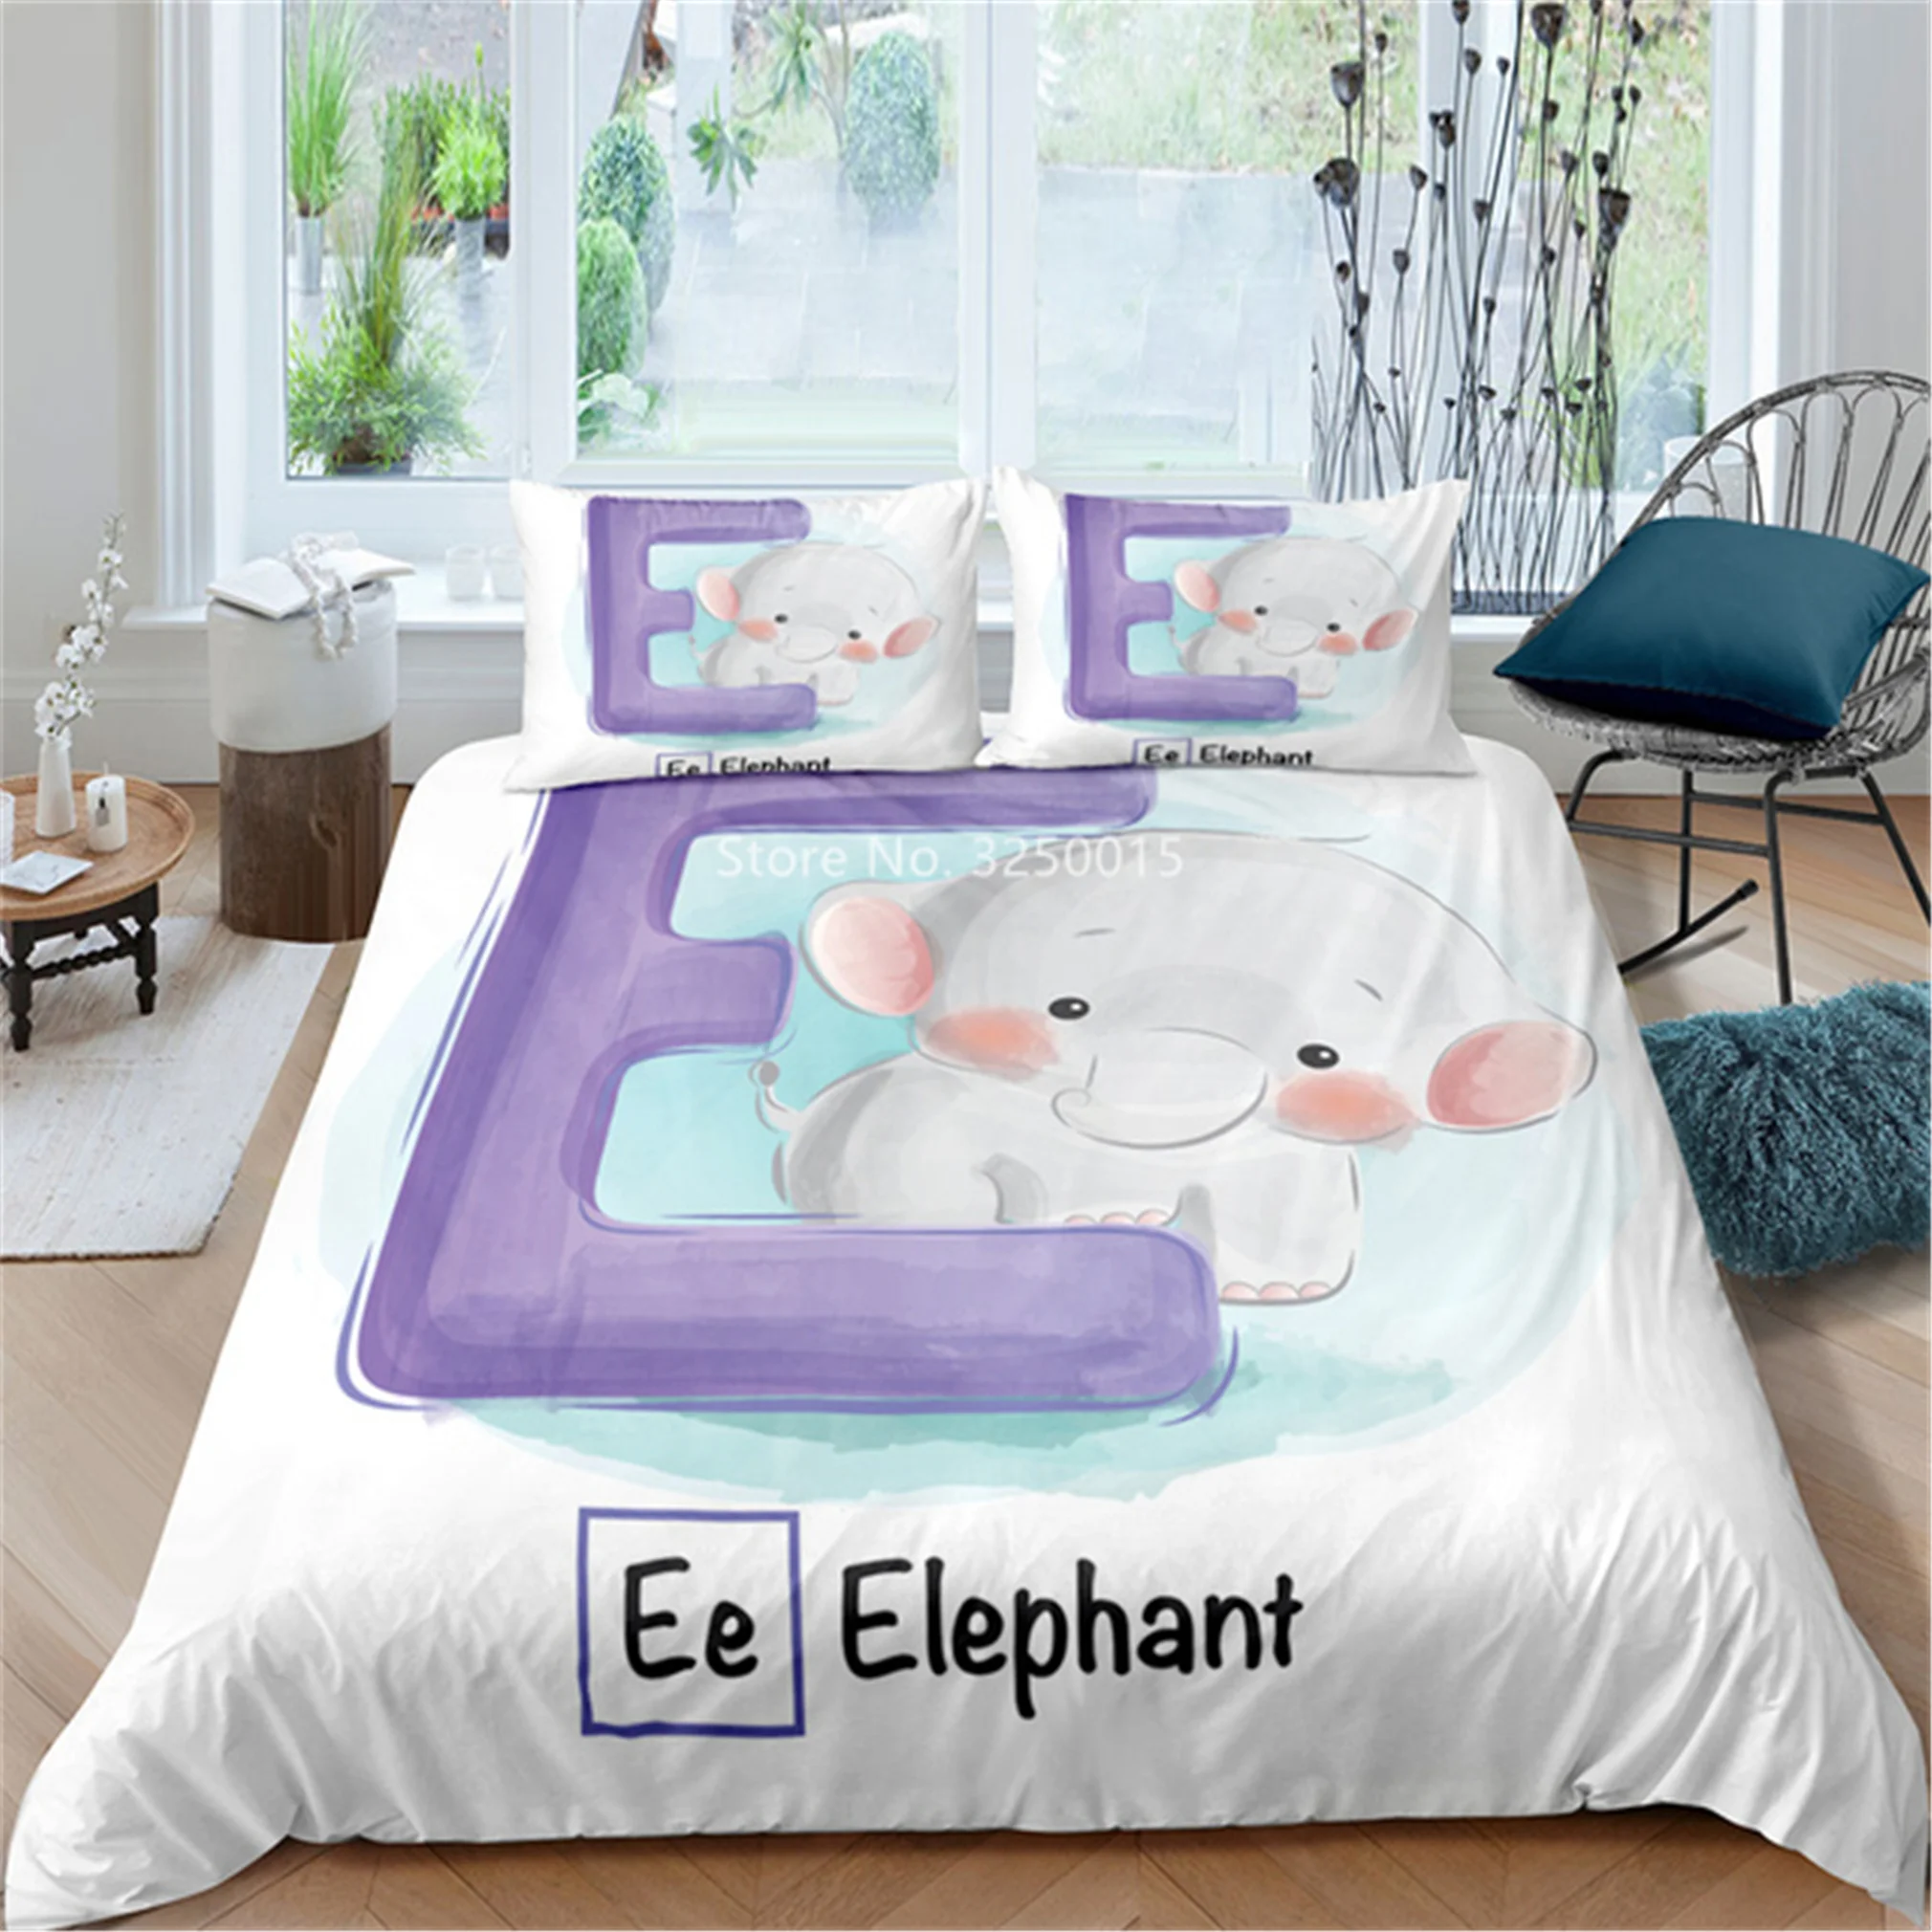 

Домашний текстиль, милый мультяшный дизайн со львом, слоном, детский удобный комплект постельного белья, пододеяльник, наволочка, украшение для спальни